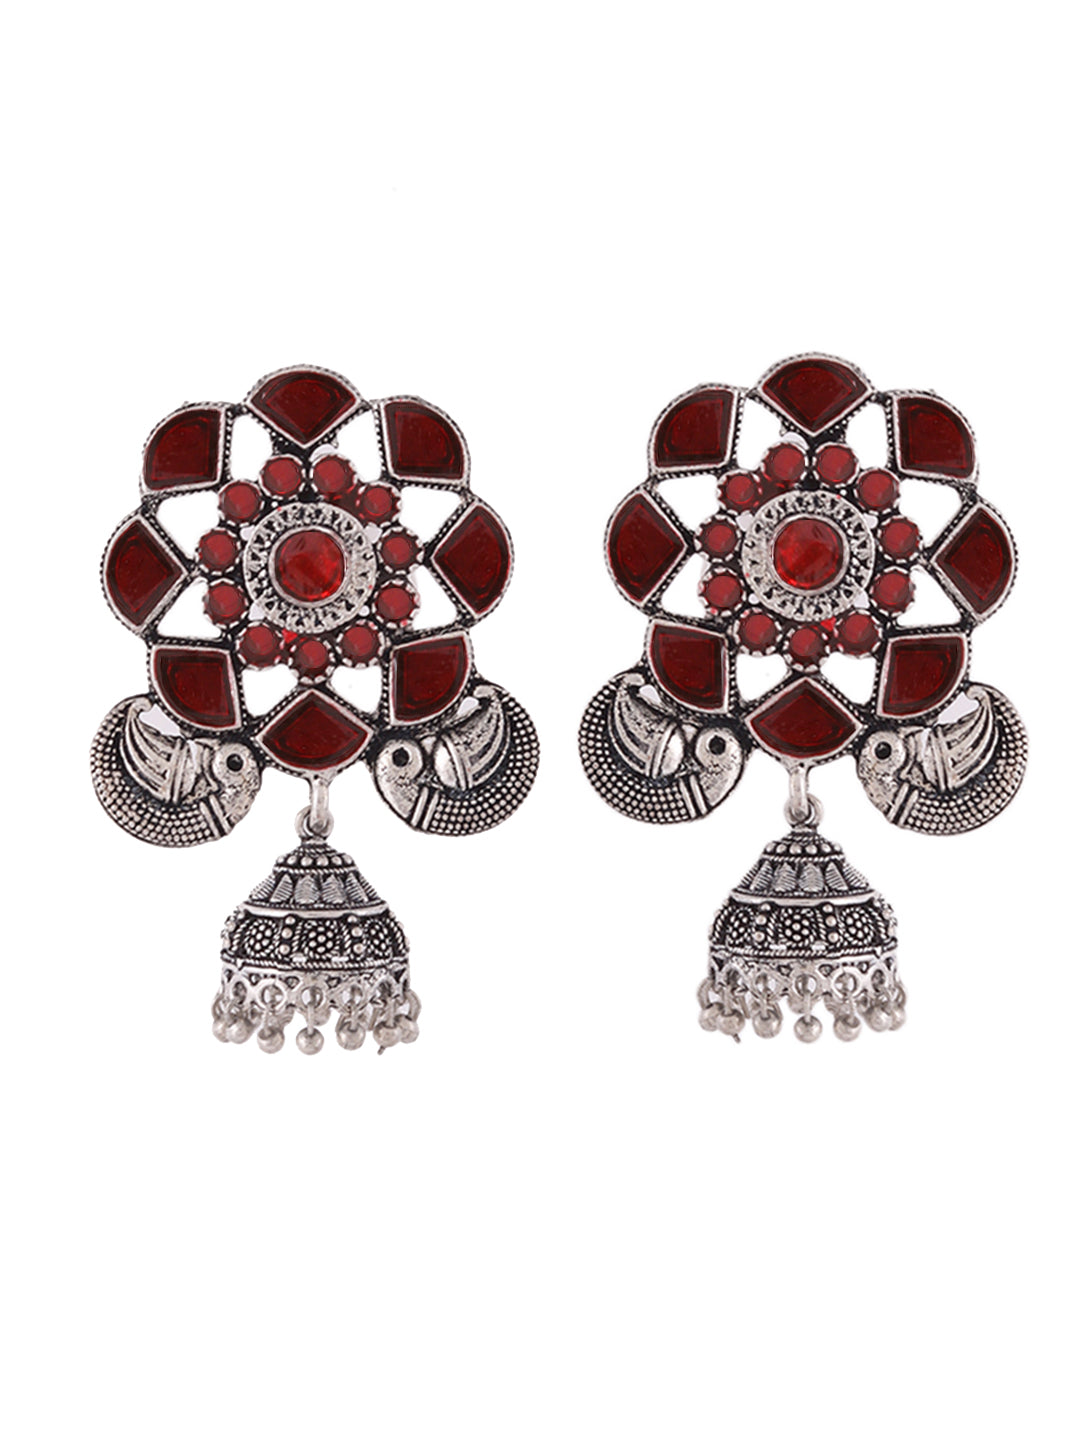 Oxidised red Stone Jhumka Earrings